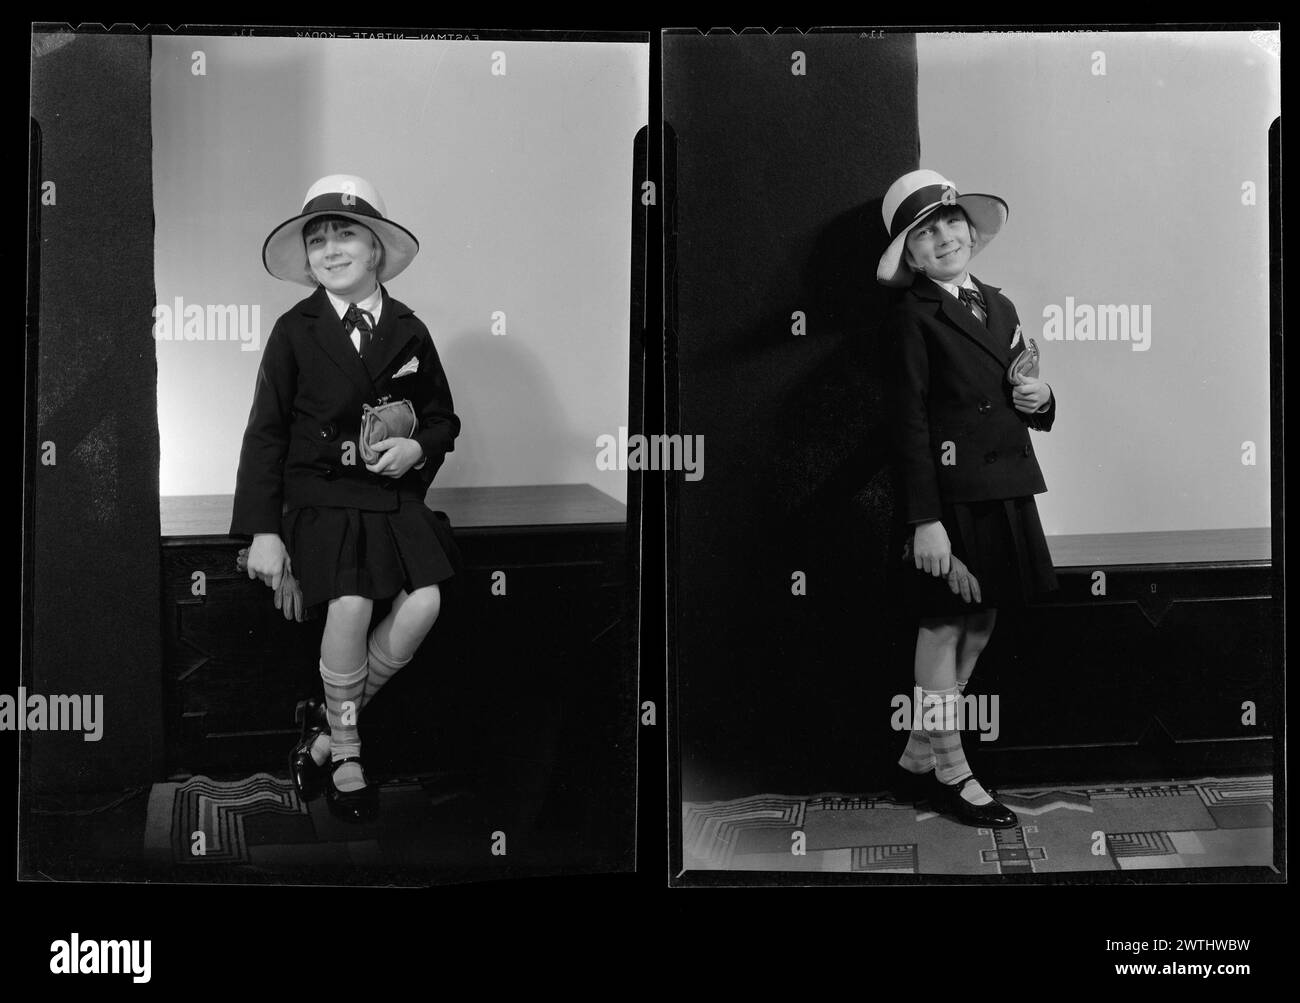 Ragazza; iscrizione "Mrs Grey, Dorothy May" nitrati negativi, gelatina argento negativi, negativi in bianco e nero, ritratti in studio Foto Stock